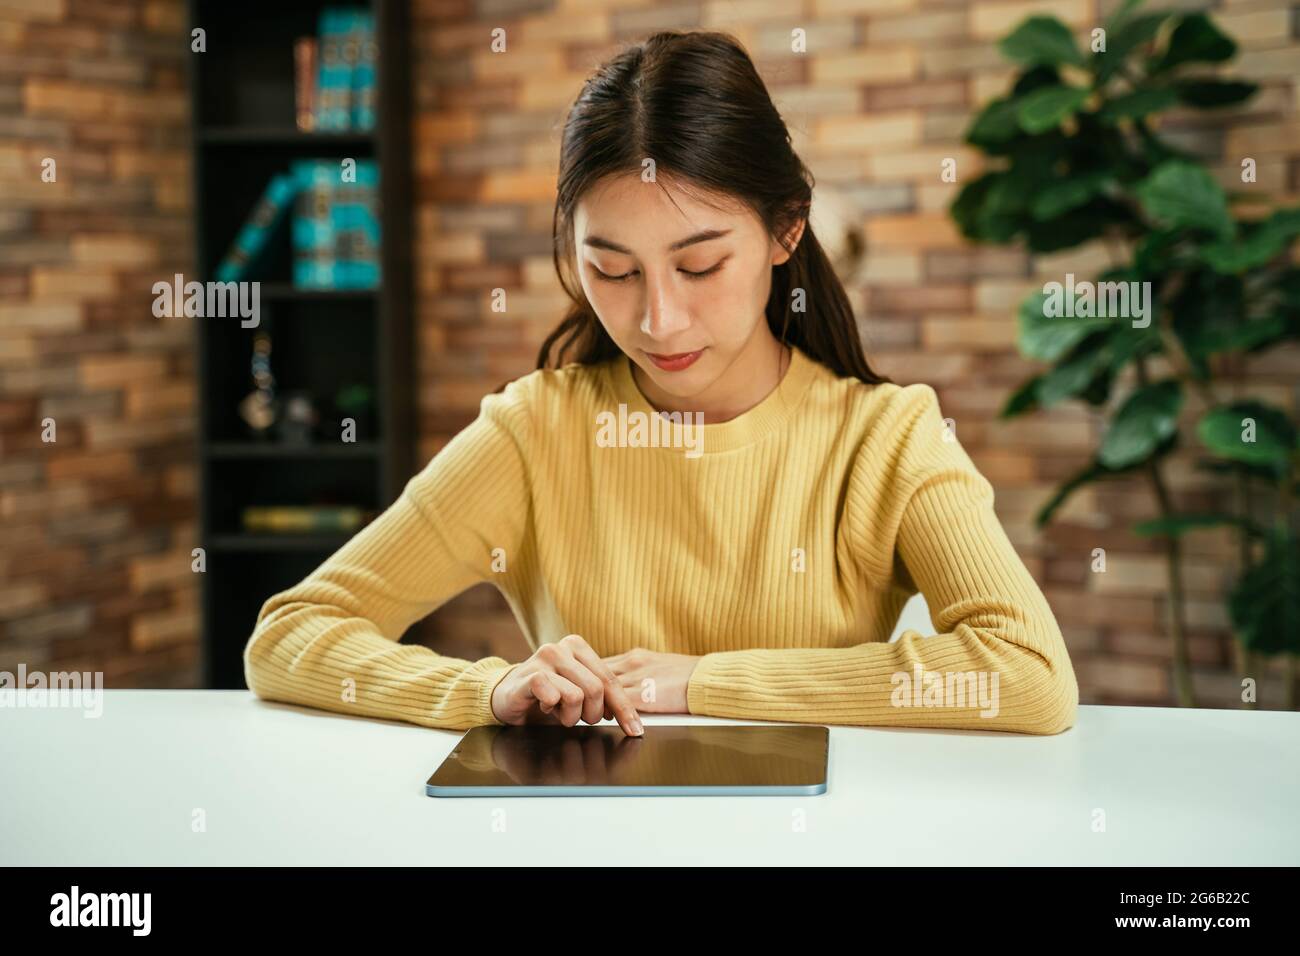 Fokussierte junge asiatische Frau, die zu Hause mit einem digitalen Tablet auf dem Schreibtisch sitzt, um in den sozialen Medien zu surfen und nachts zu Hause online zu shoppen Stockfoto